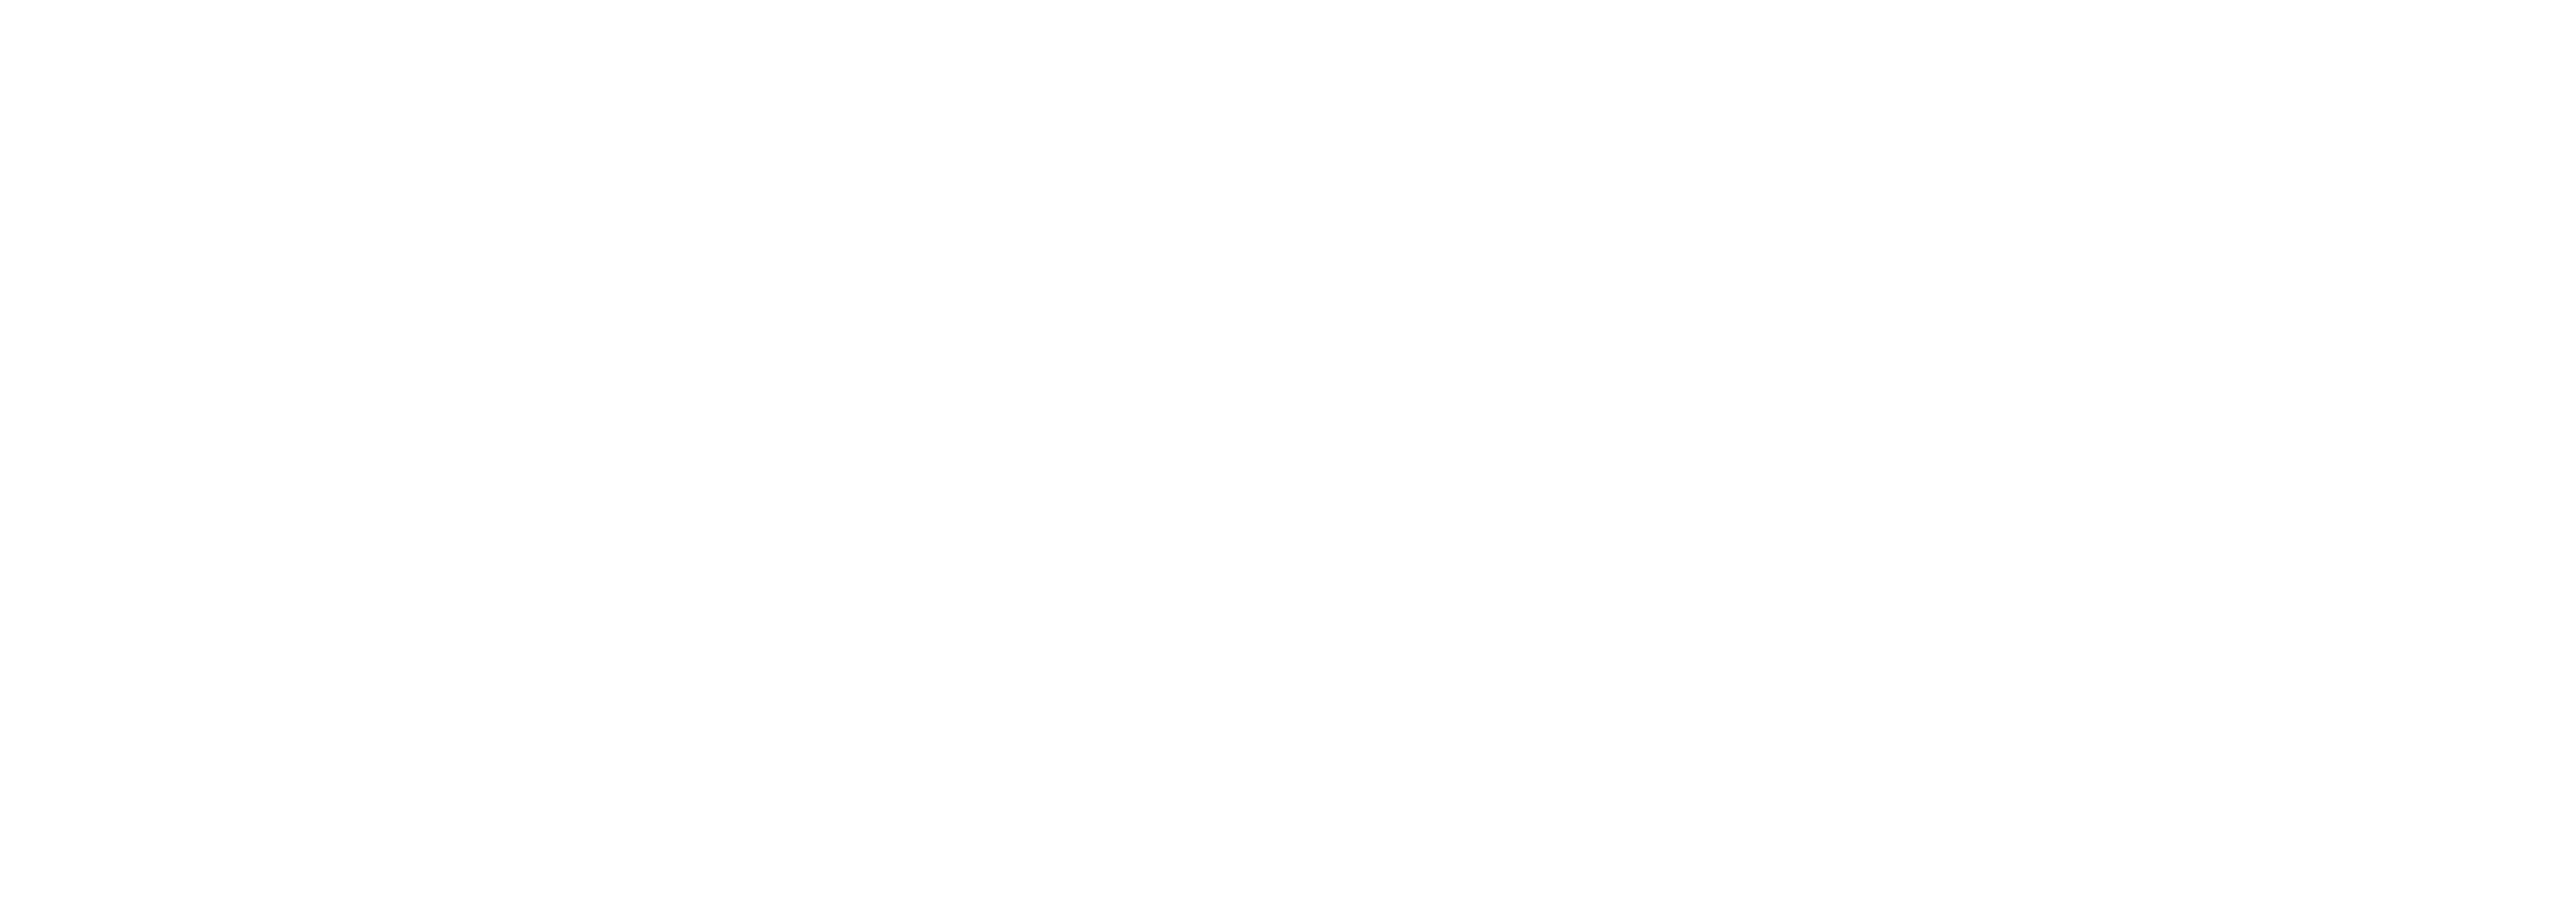 a85